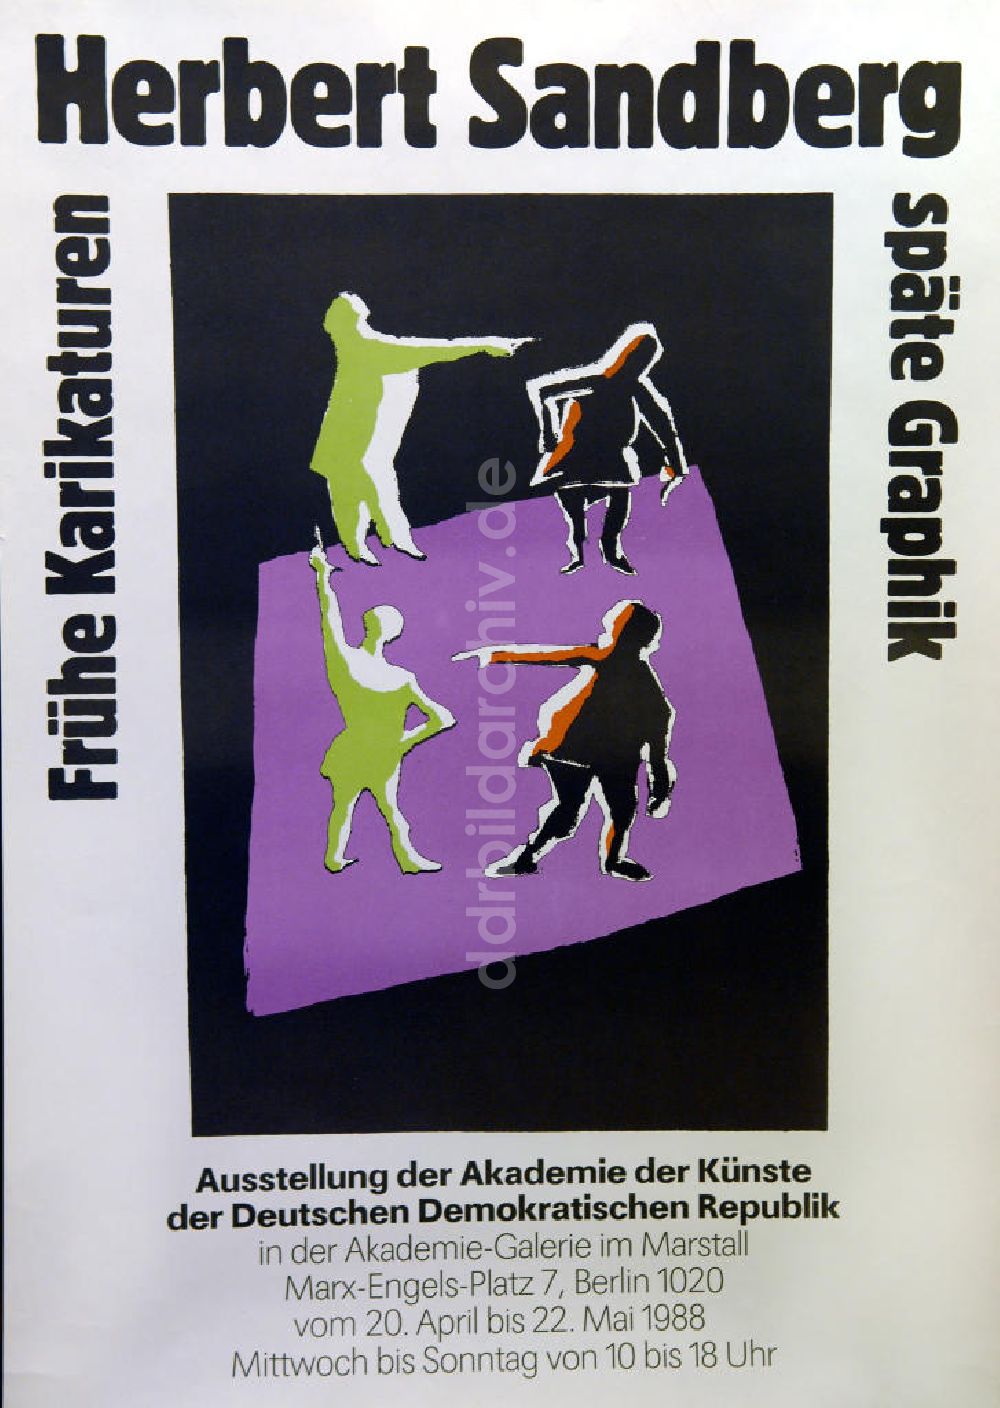 DDR-Bildarchiv: Berlin - Plakat von der Ausstellung Herbert Sandberg, frühe Karikaturen, späte Graphik aus dem Jahr 1988